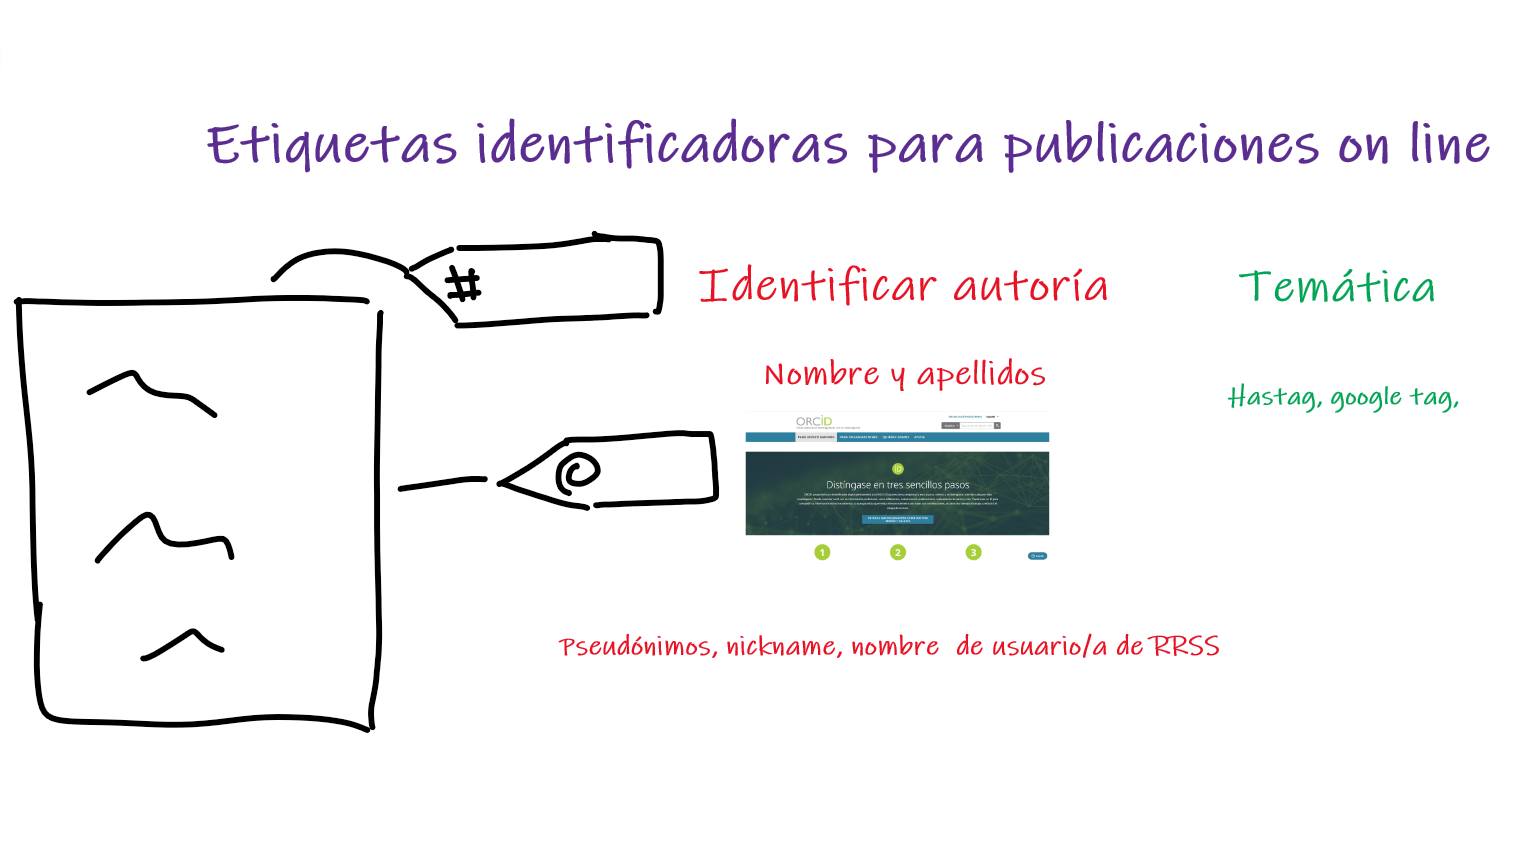 Tipos de etiquetas para identificación on line. De autoría y de temática, incluye imagen de la pantalla inicial de ORCID.